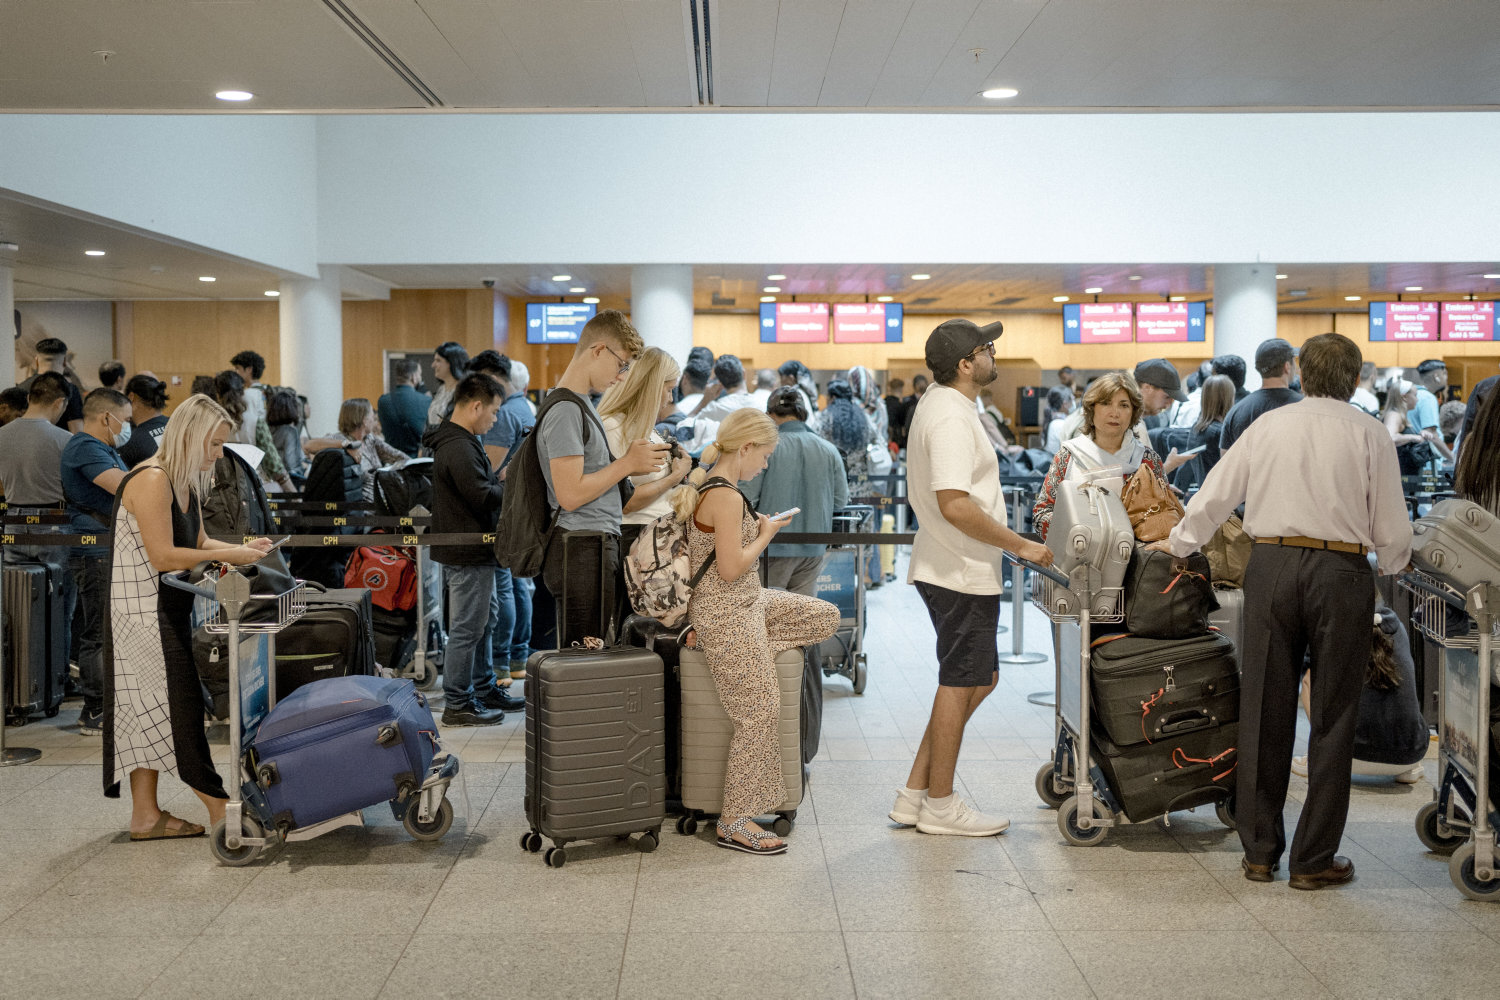 københavns lufthavn fortsætter med tocifret passagervækst